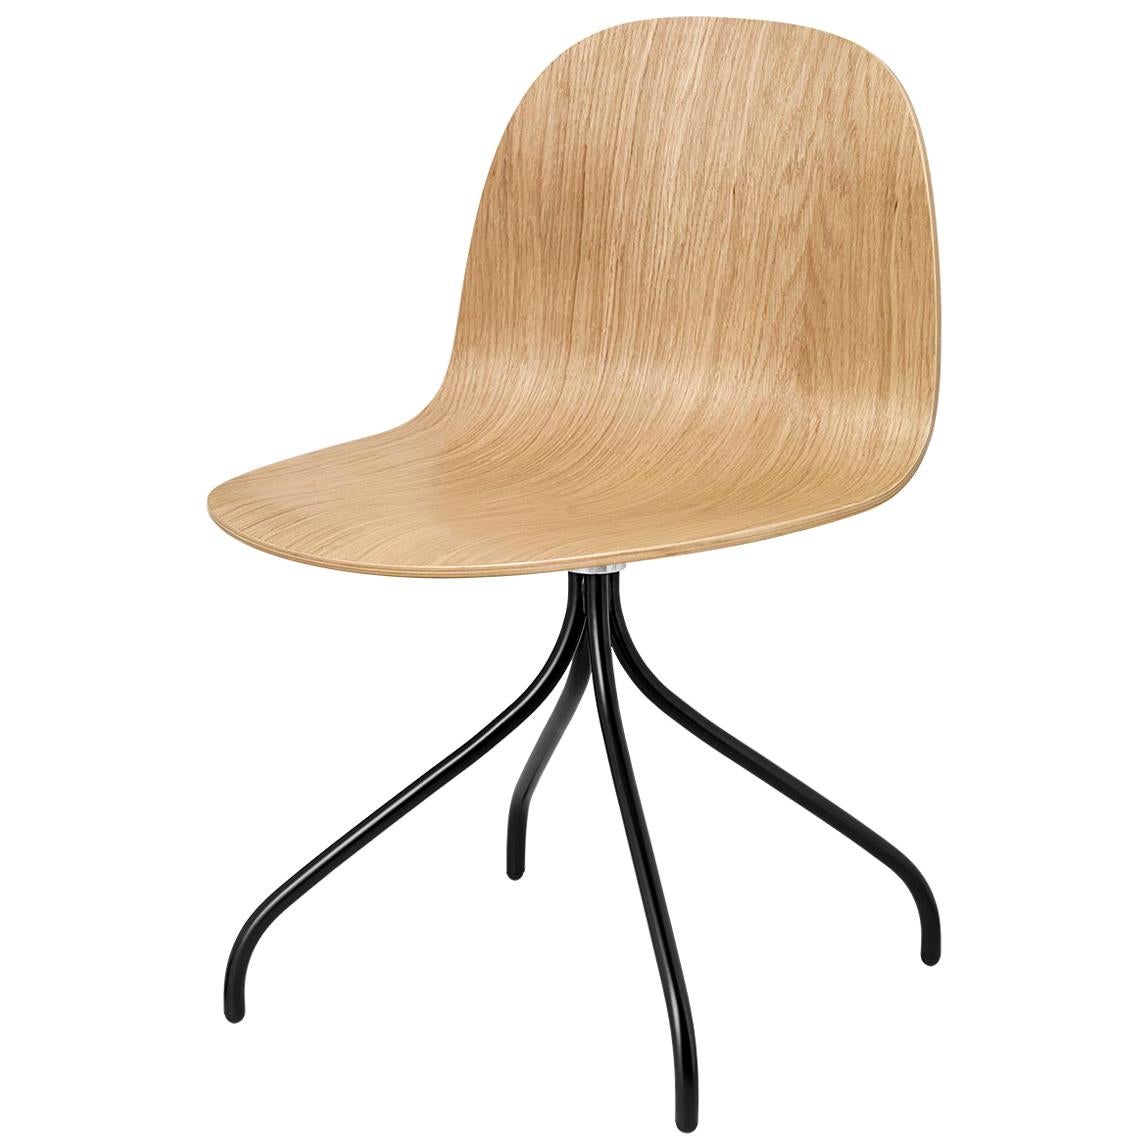 2D Meeting Chair, Un Upholstered, Matte Black Swivel Base, Natural Oak